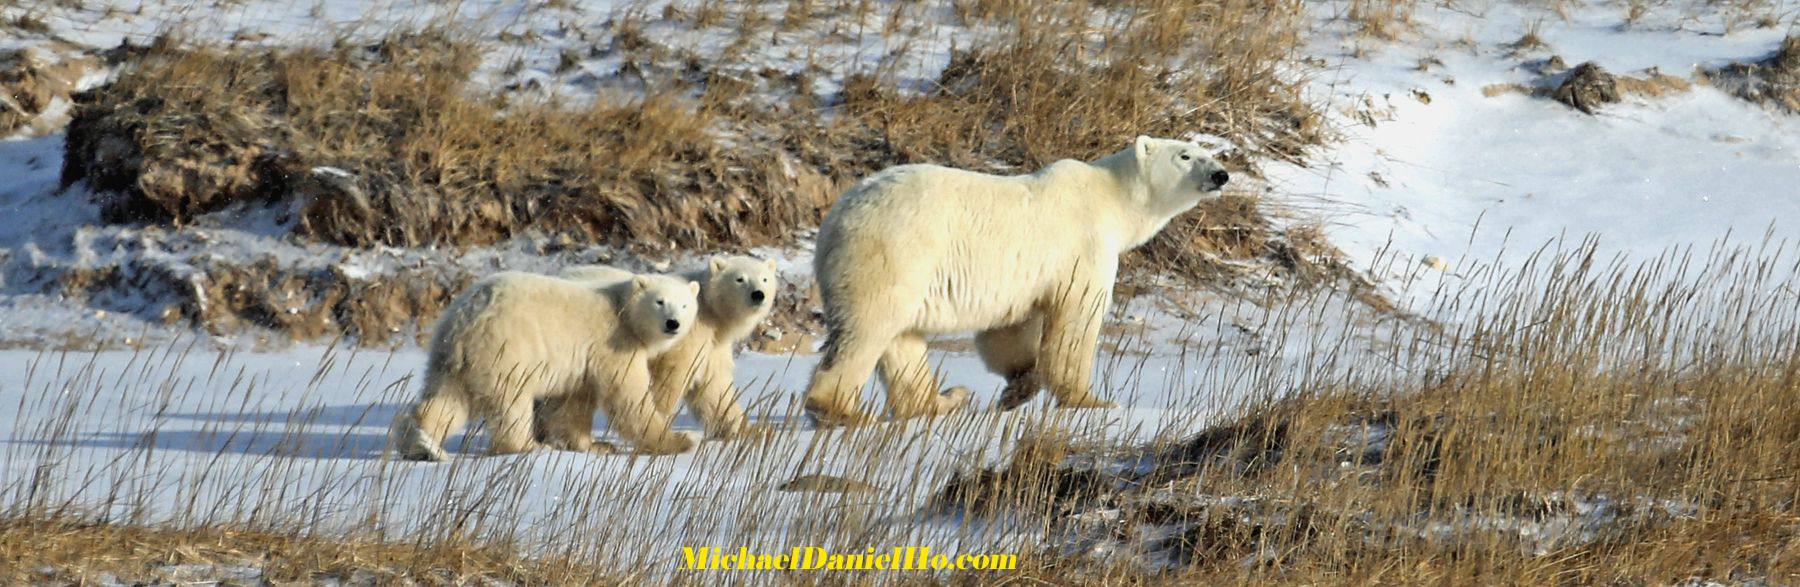 photo of polar bear with cubs